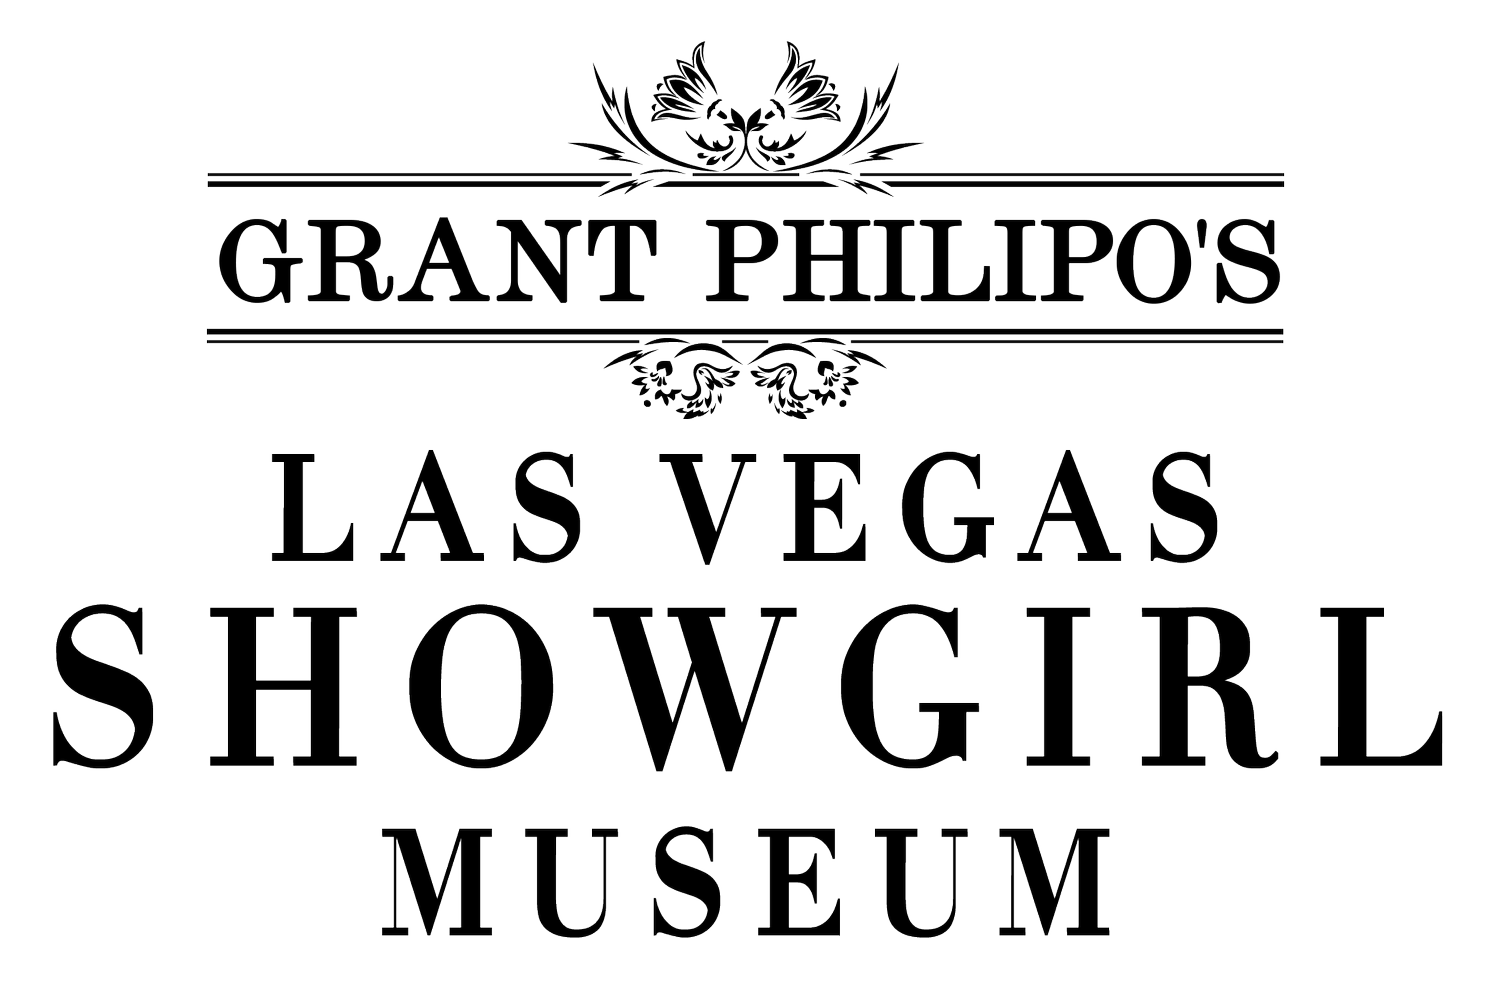 GRANT PHILIPO'S LAS VEGAS SHOWGIRL MUSEUM